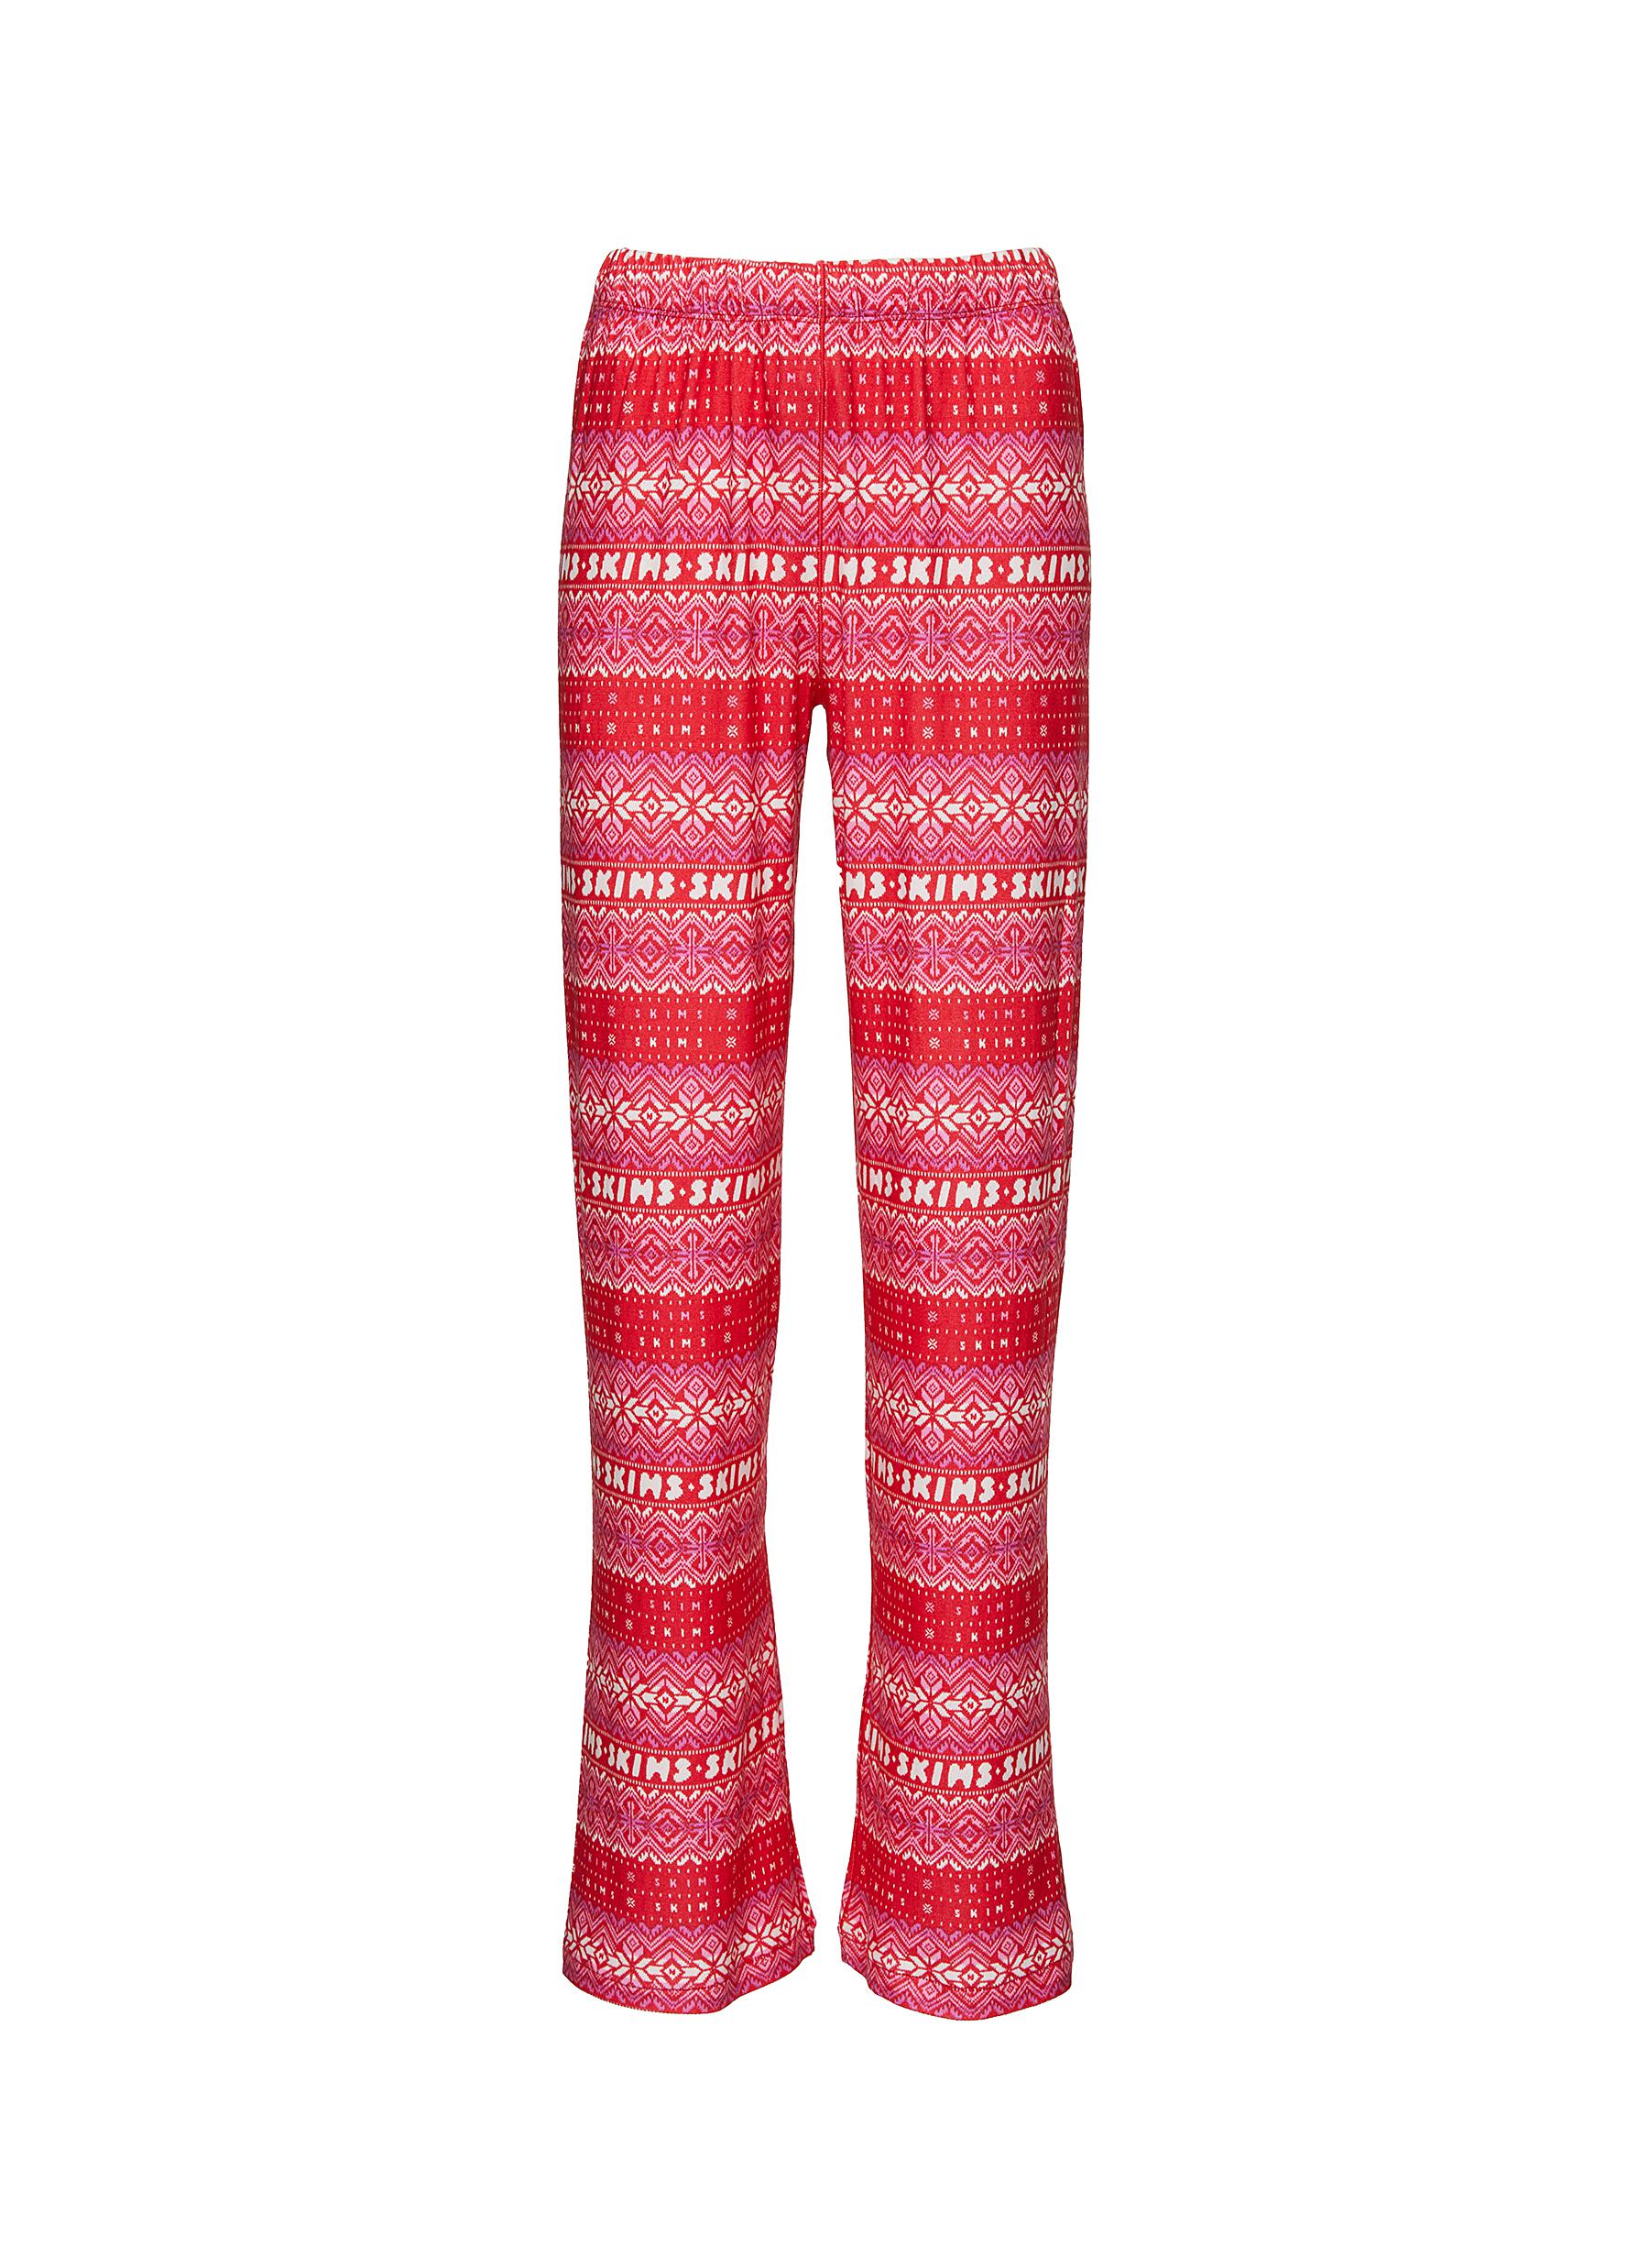 SKIMS Drawstring Pants, Pink, Medium